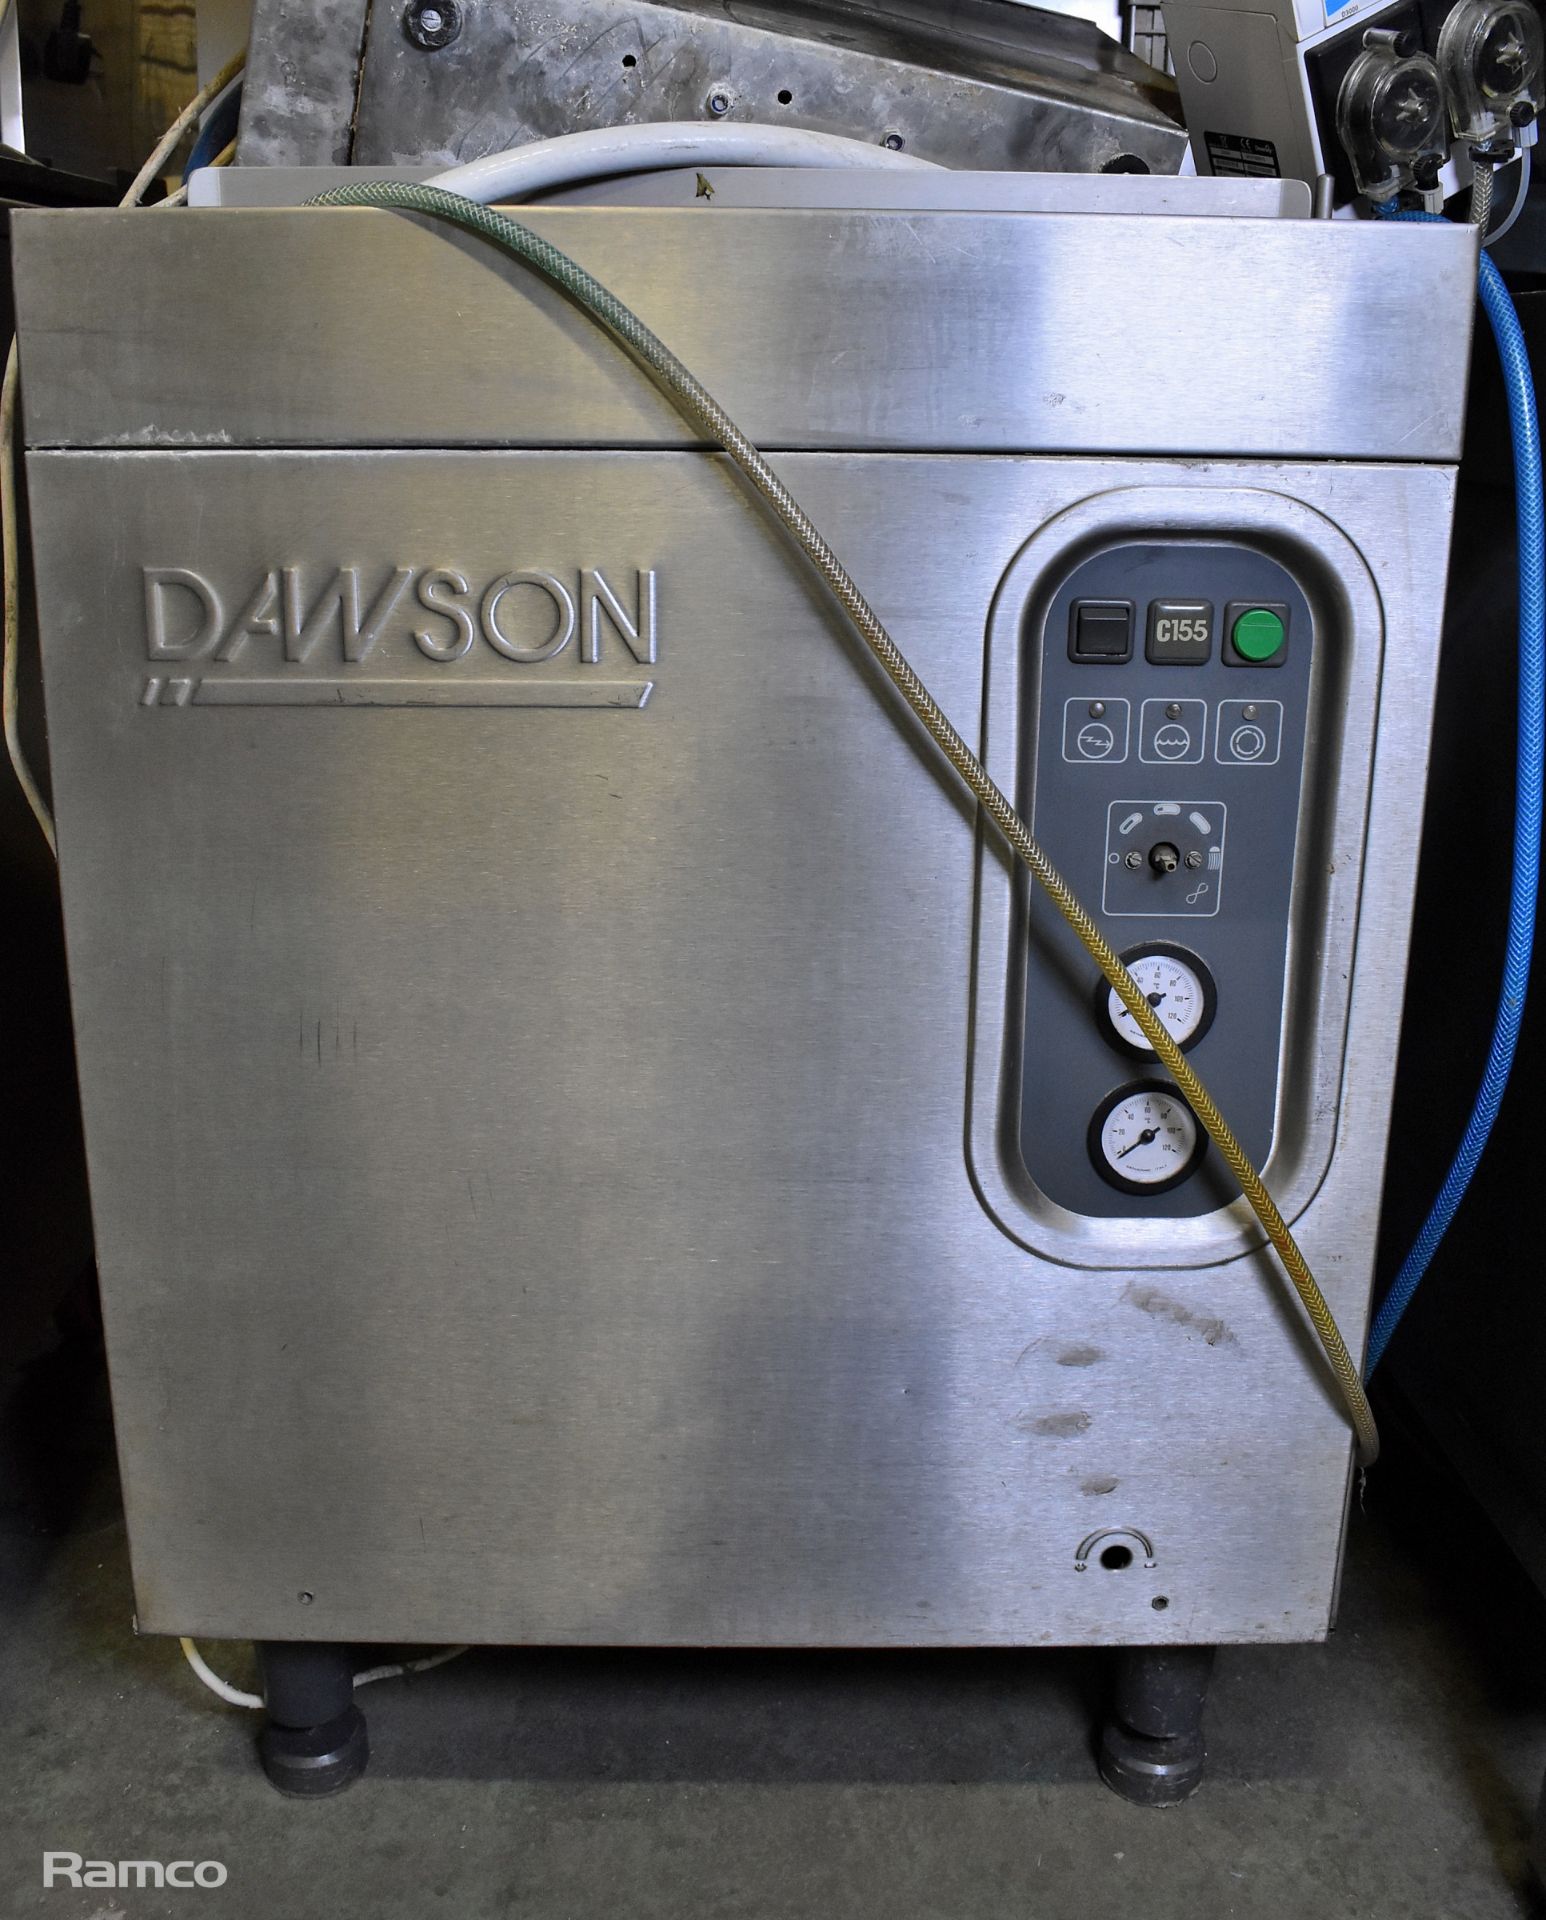 Dawson C155 hood-type dishwasher - Bild 2 aus 6